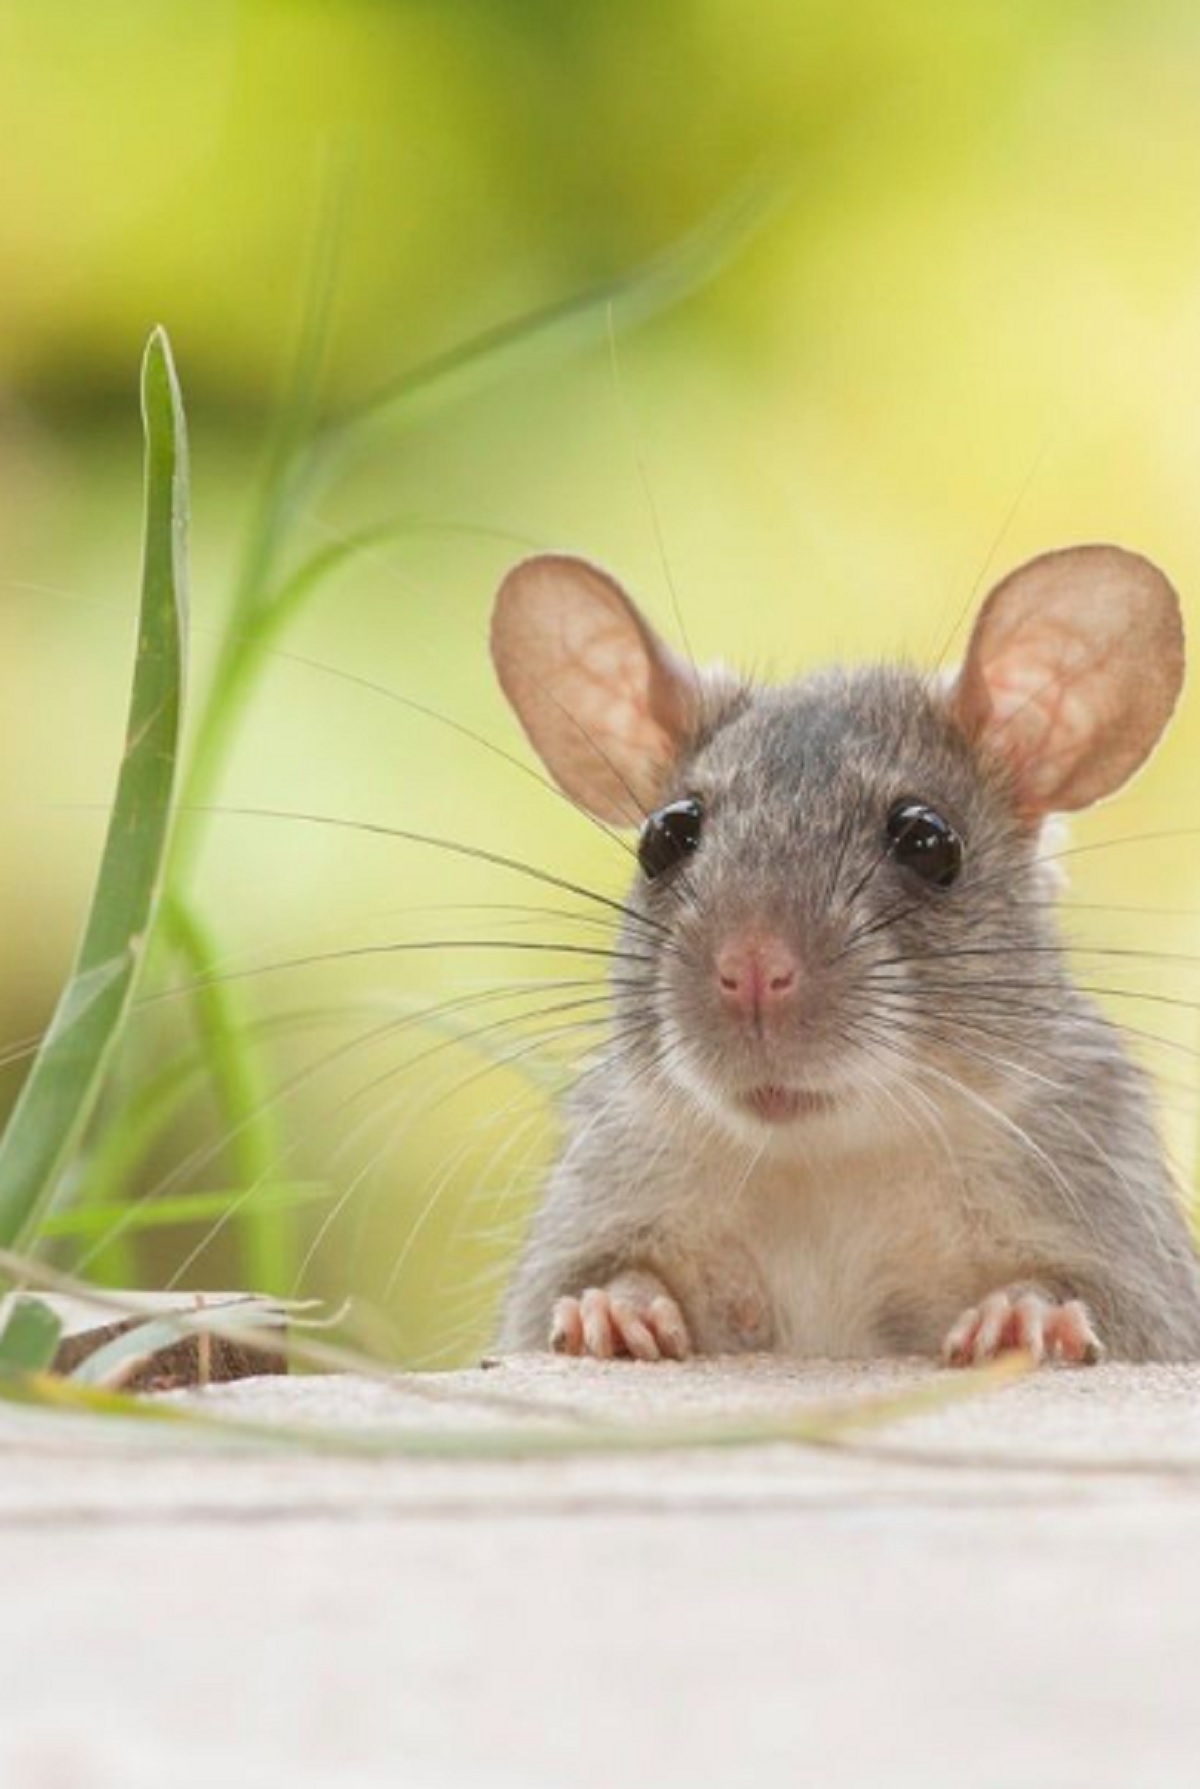 Buat Tikus Kabur Dari Rumah, Berikut 6 Bau Wewangian Yang Tidak Disukai Tikus di Rumah